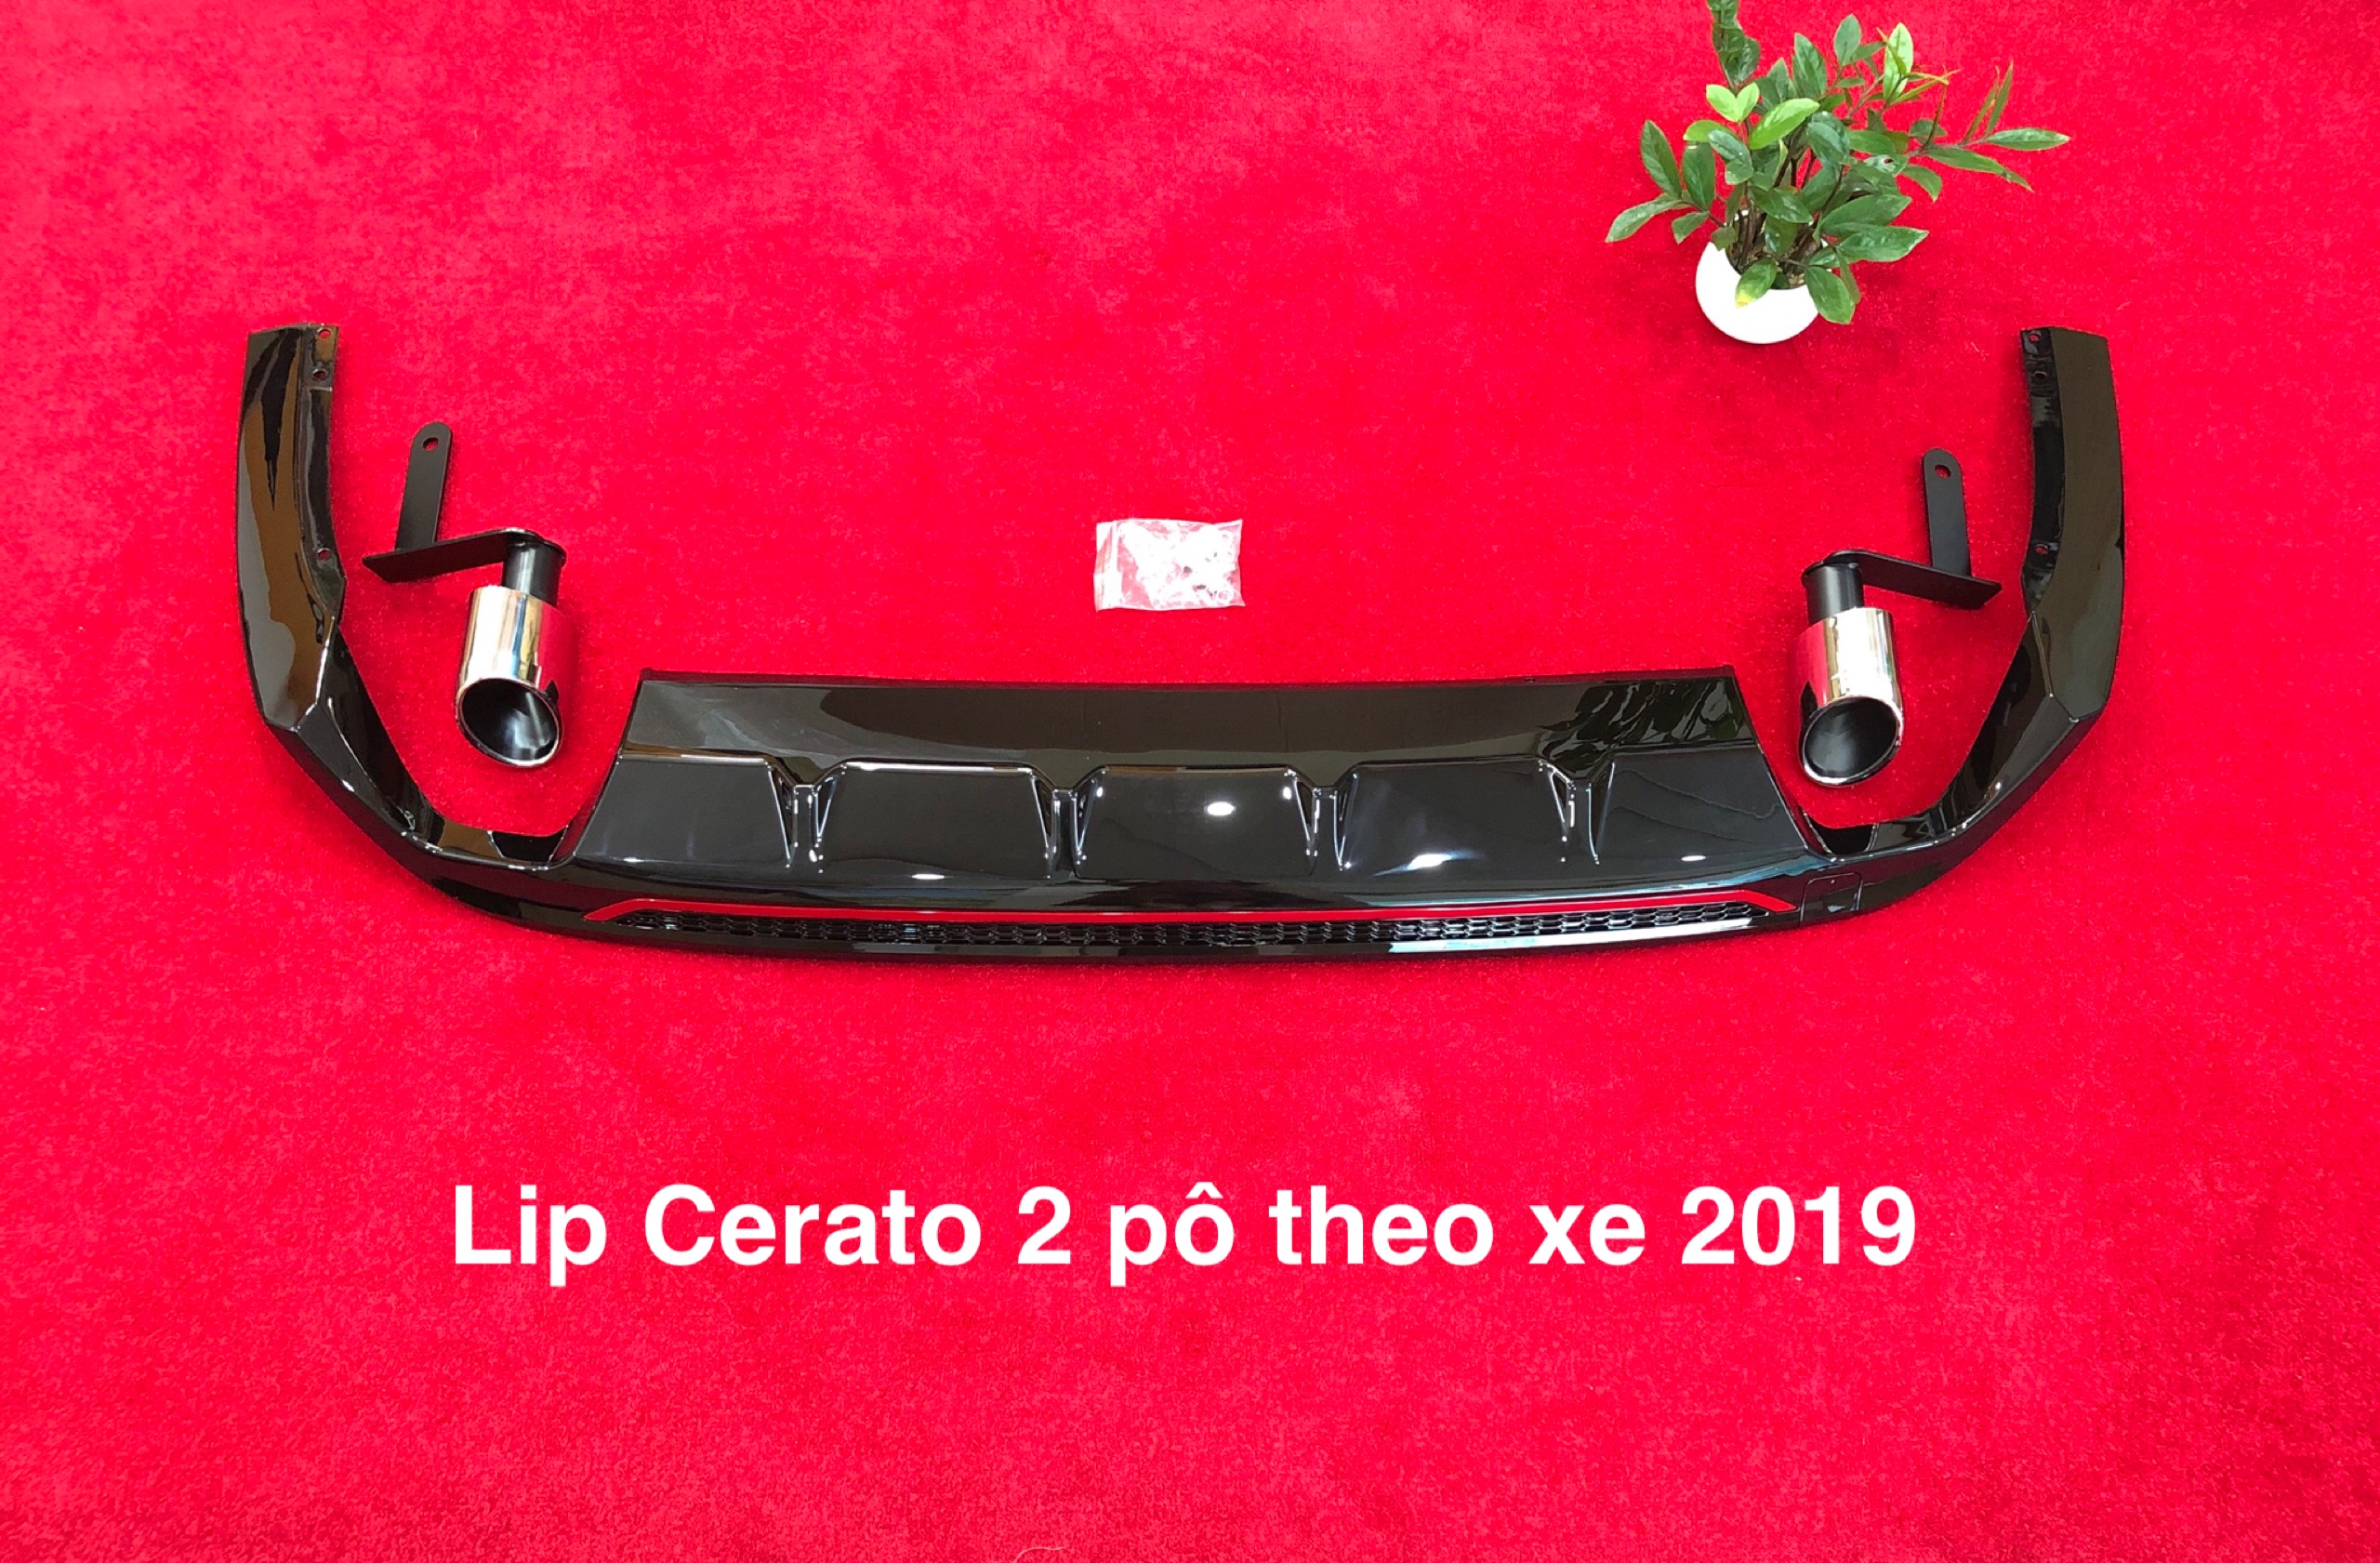 Lip Cerato 2 pô theo xe 2019